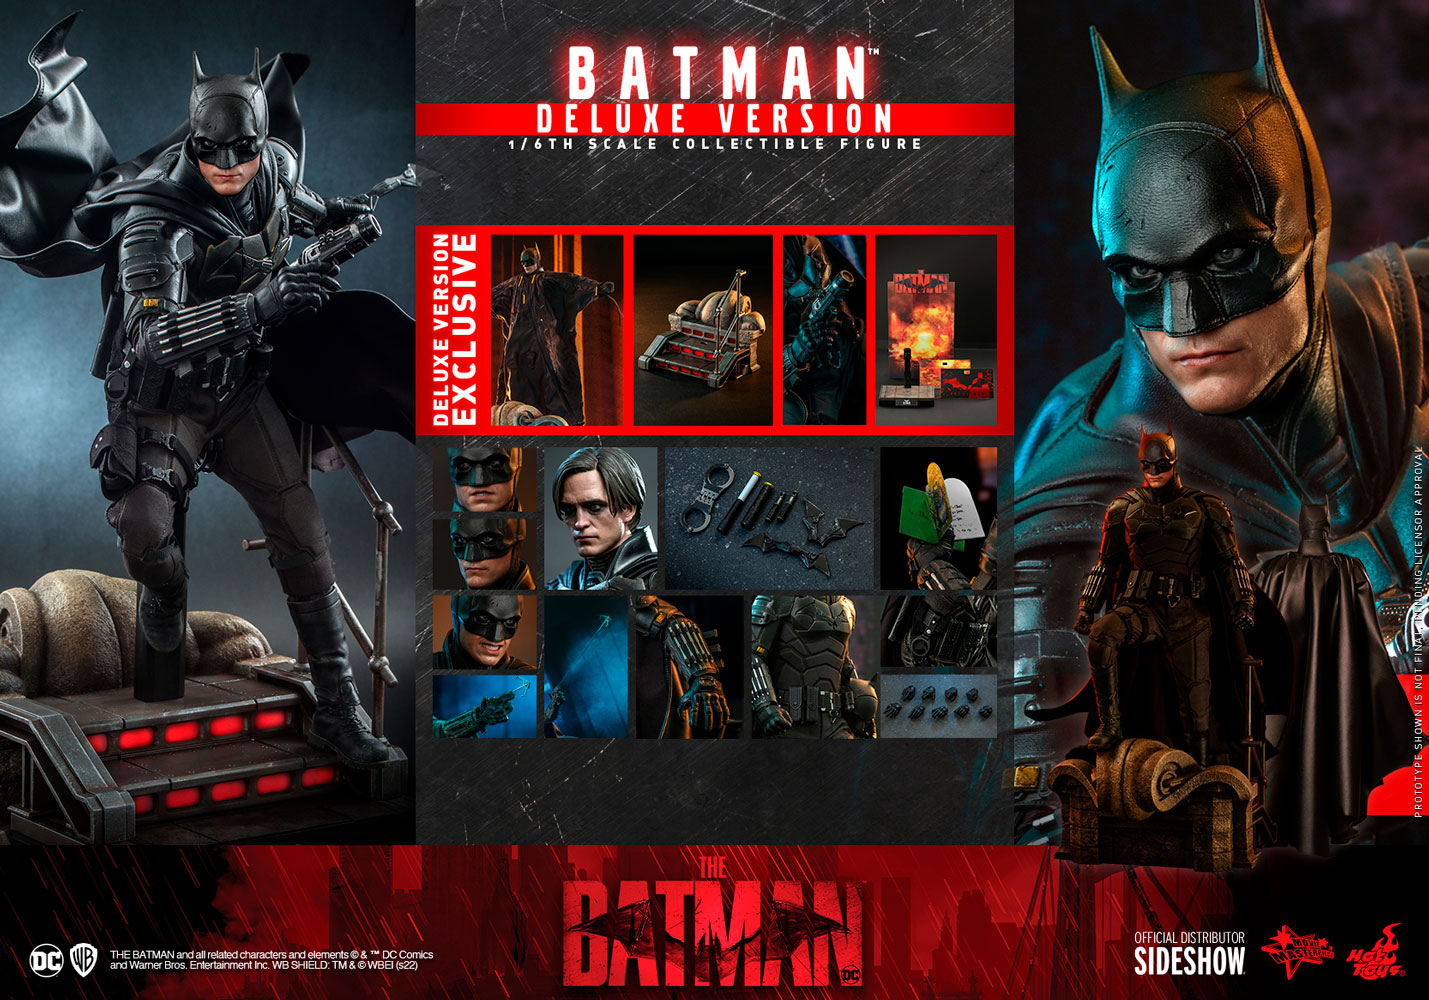 DC Batman (The Batman) DELUXE VERSION 1:6 Scale Figure Hot Toys